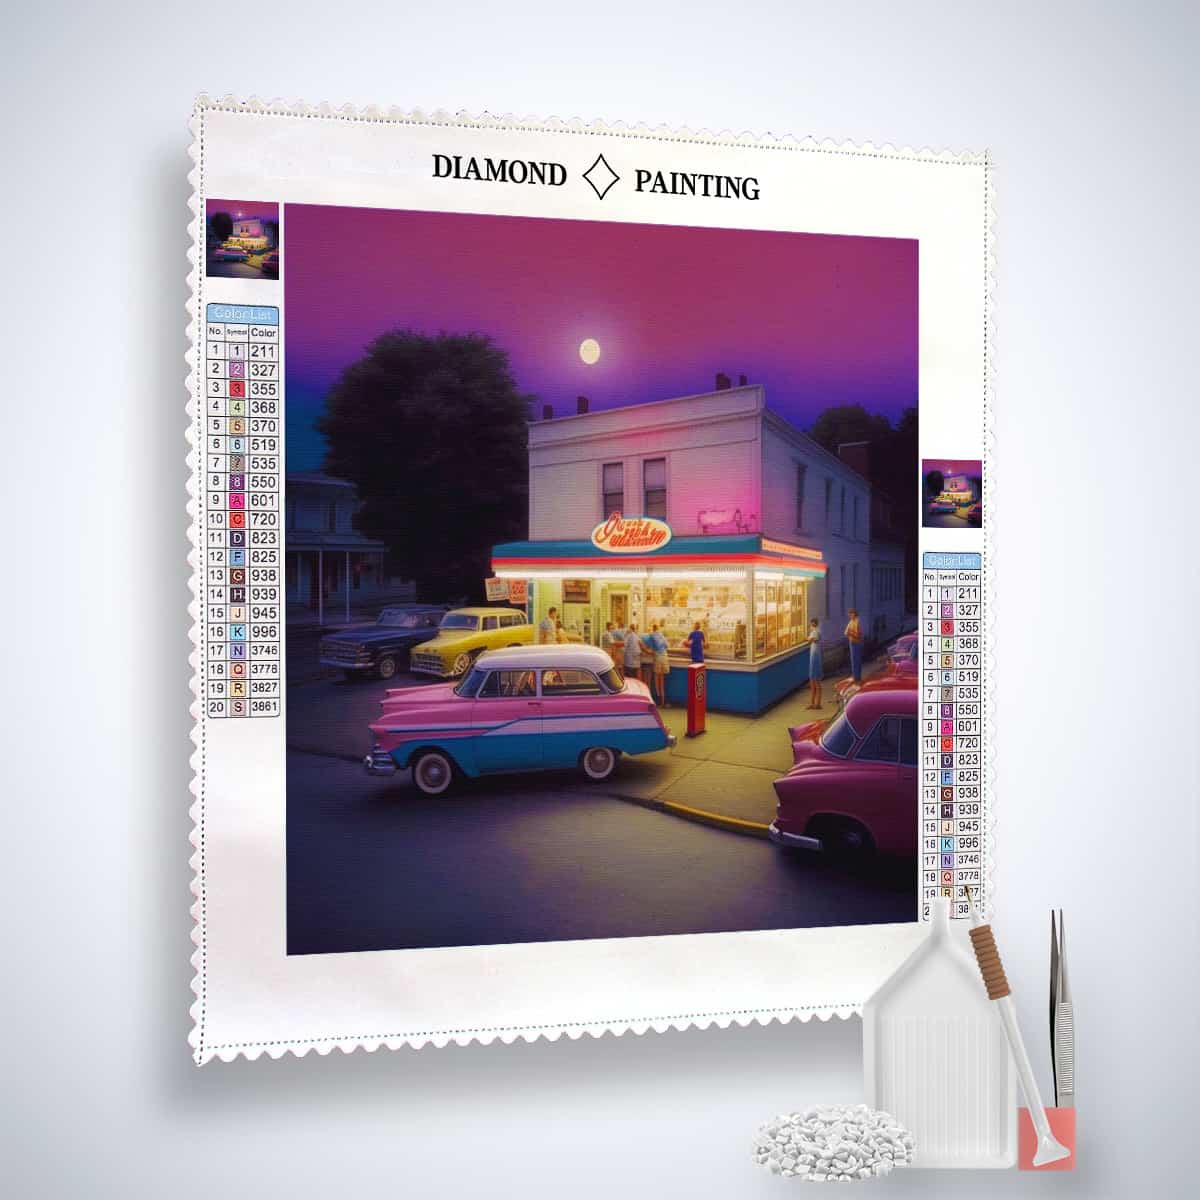 Diamond Painting - Zeitreise an der Zapfsäule - gedruckt in Ultra-HD - Auto, Neu eingetroffen, Quadratisch, Retro, Route 66